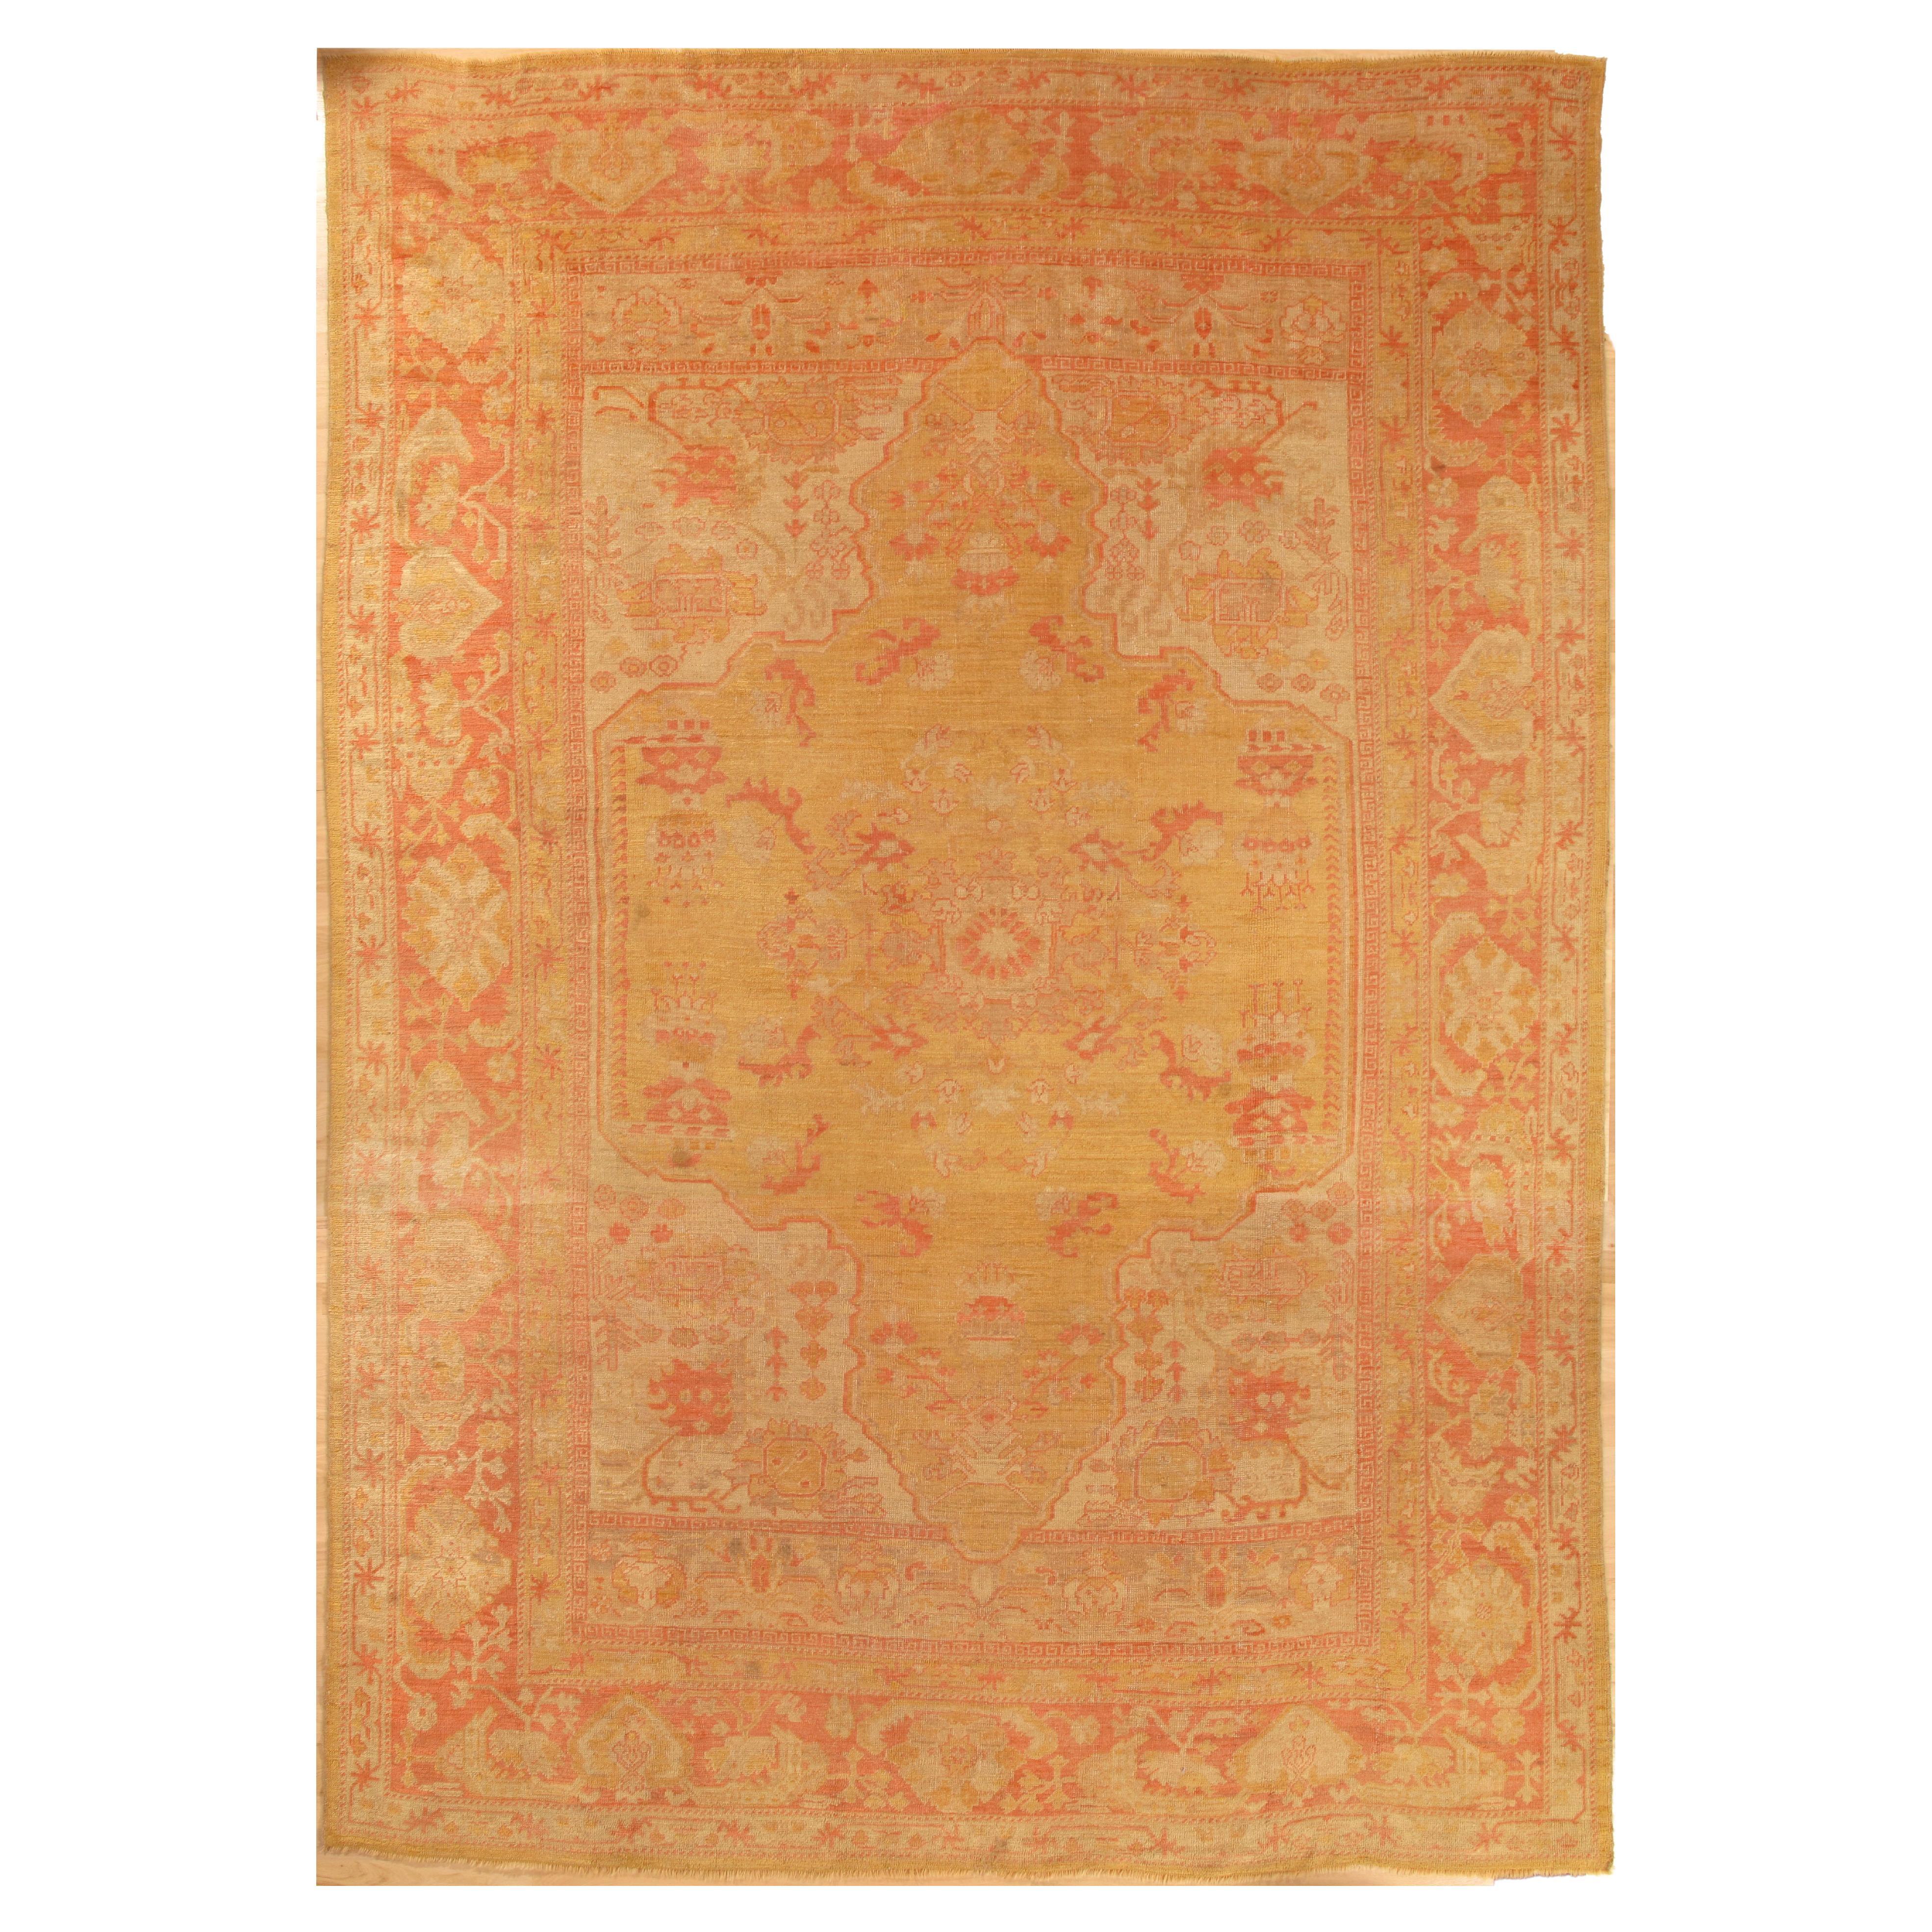 Antique Turkish Oushak Carpet, Handmade Oriental Rug, Gold, Taupe, Shrimp Coral For Sale